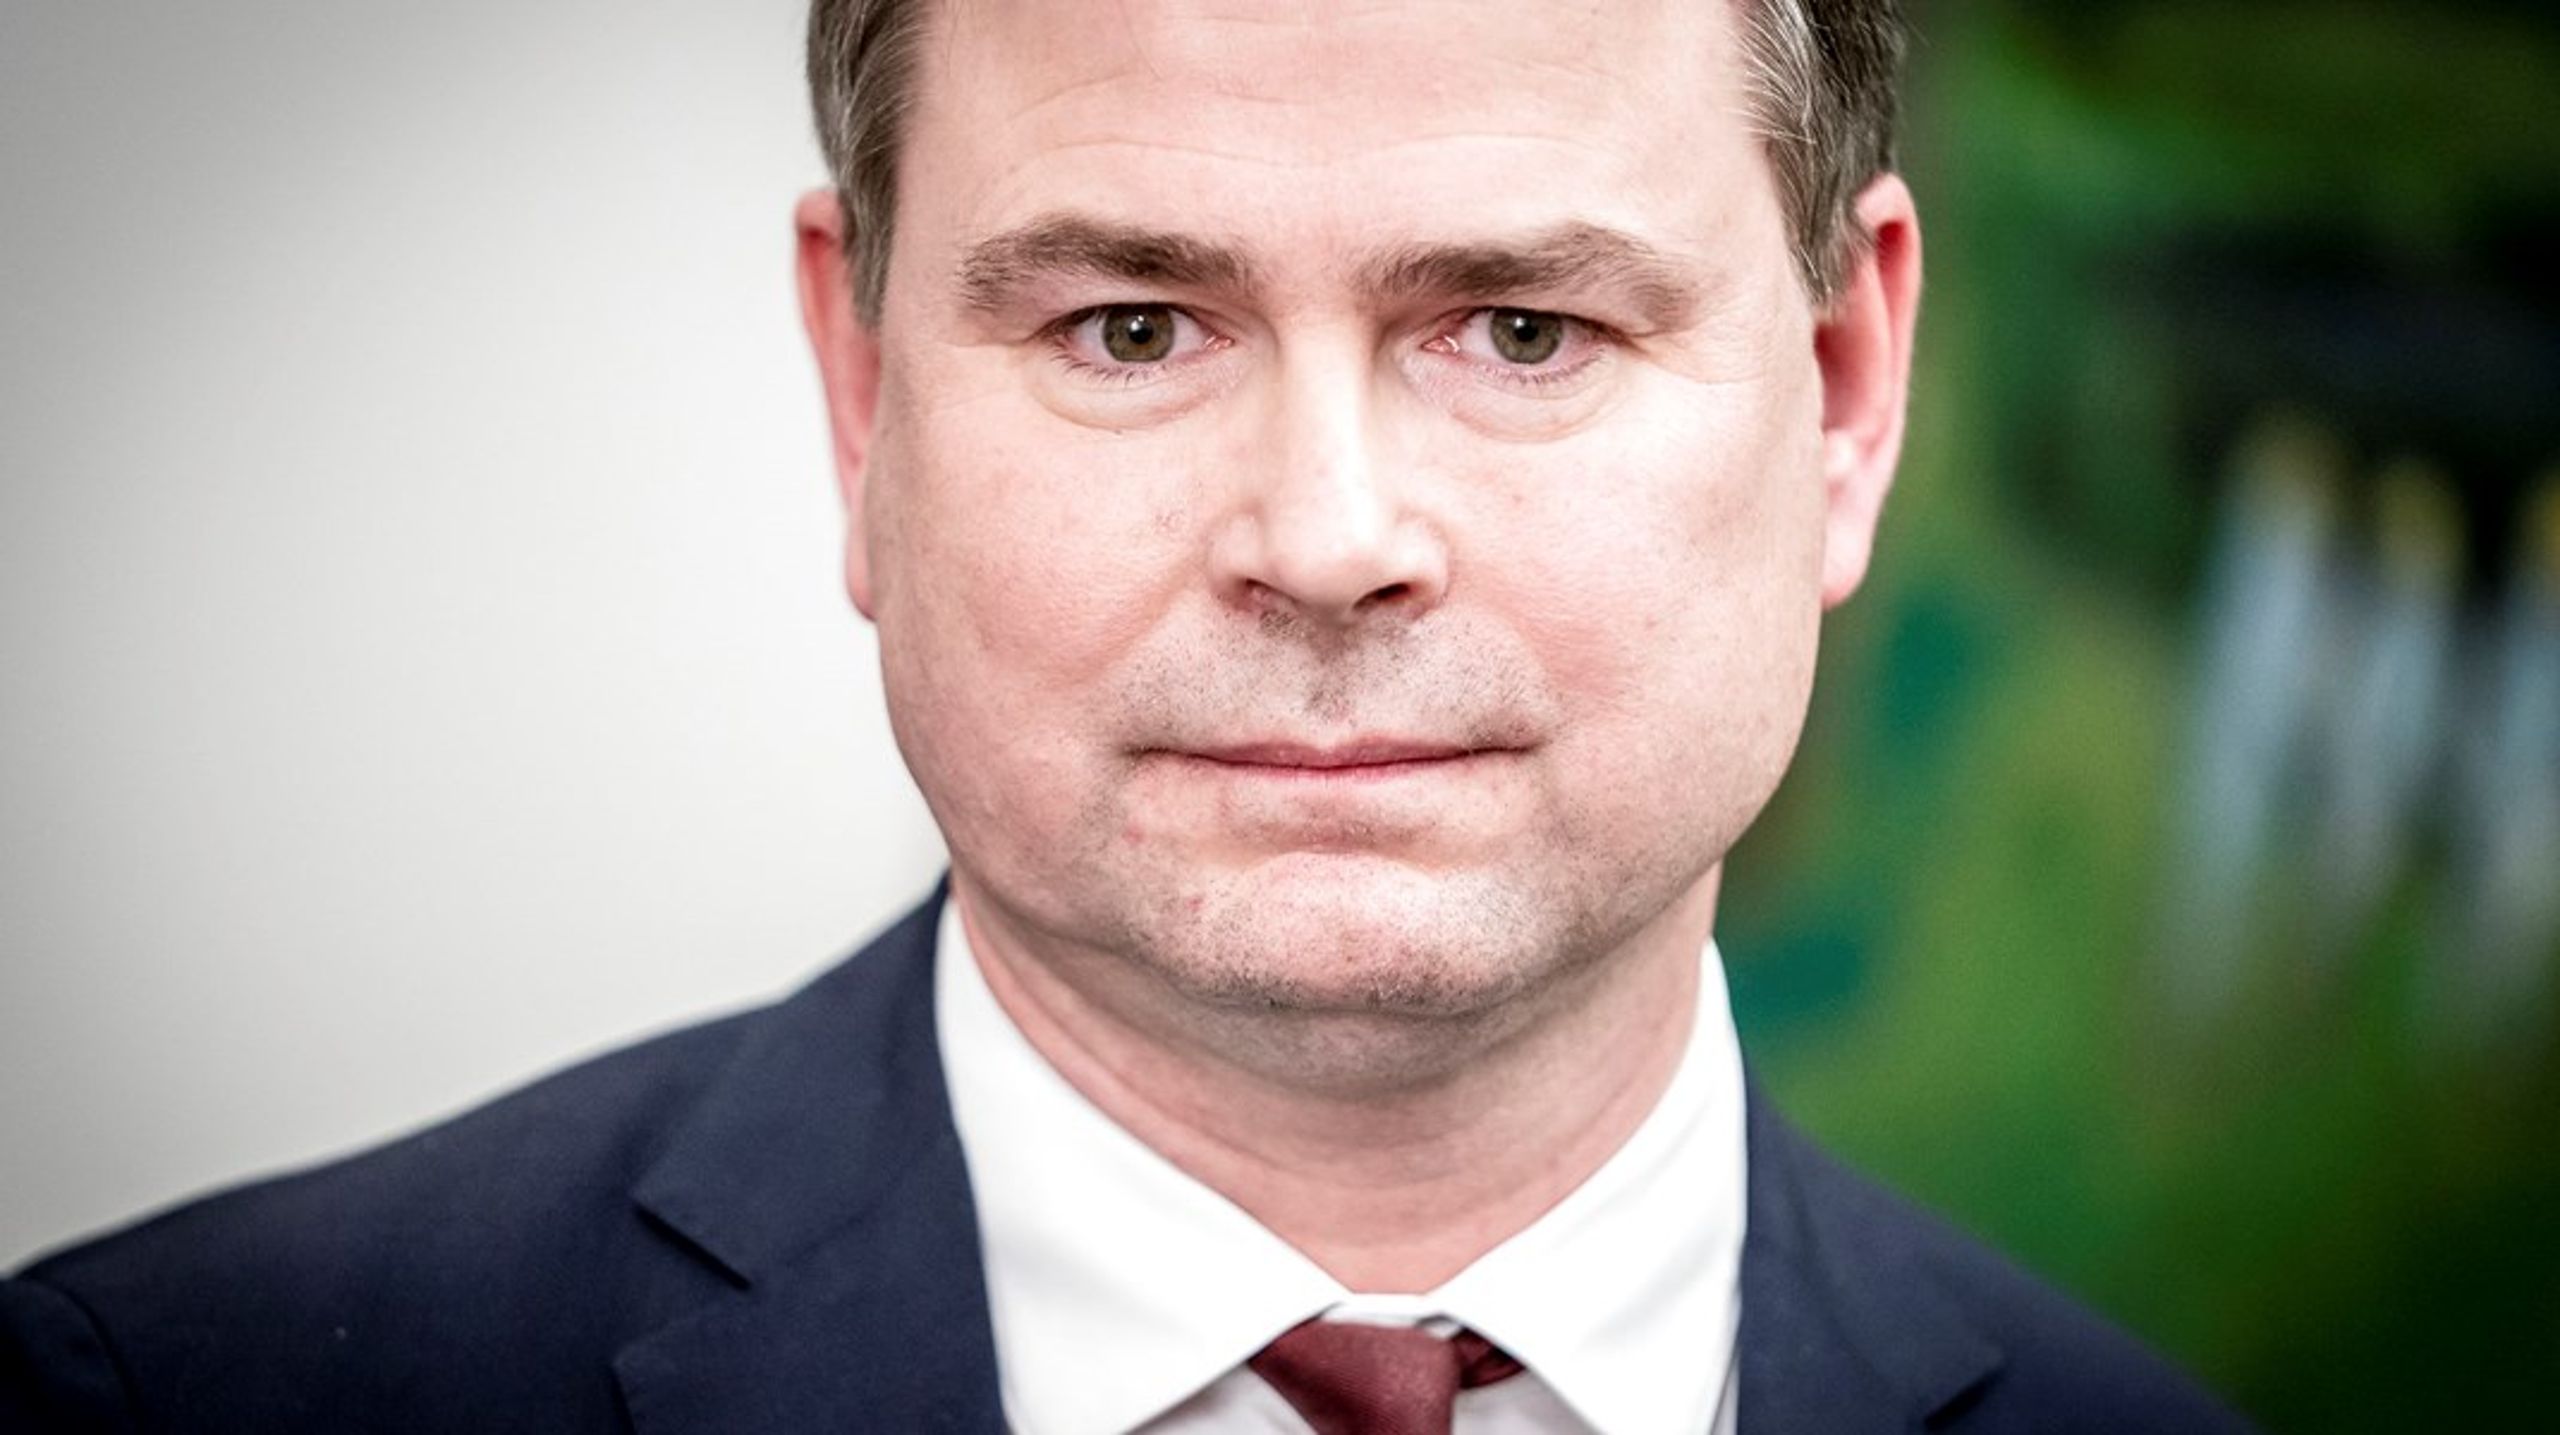 Finansminister Nicolai Wammen (S) er med i en "lille klub" af europæiske finansministre, der er stærkt imod grønstemplingen af naturgas og atomkraft, fortalte han torsdag.&nbsp;